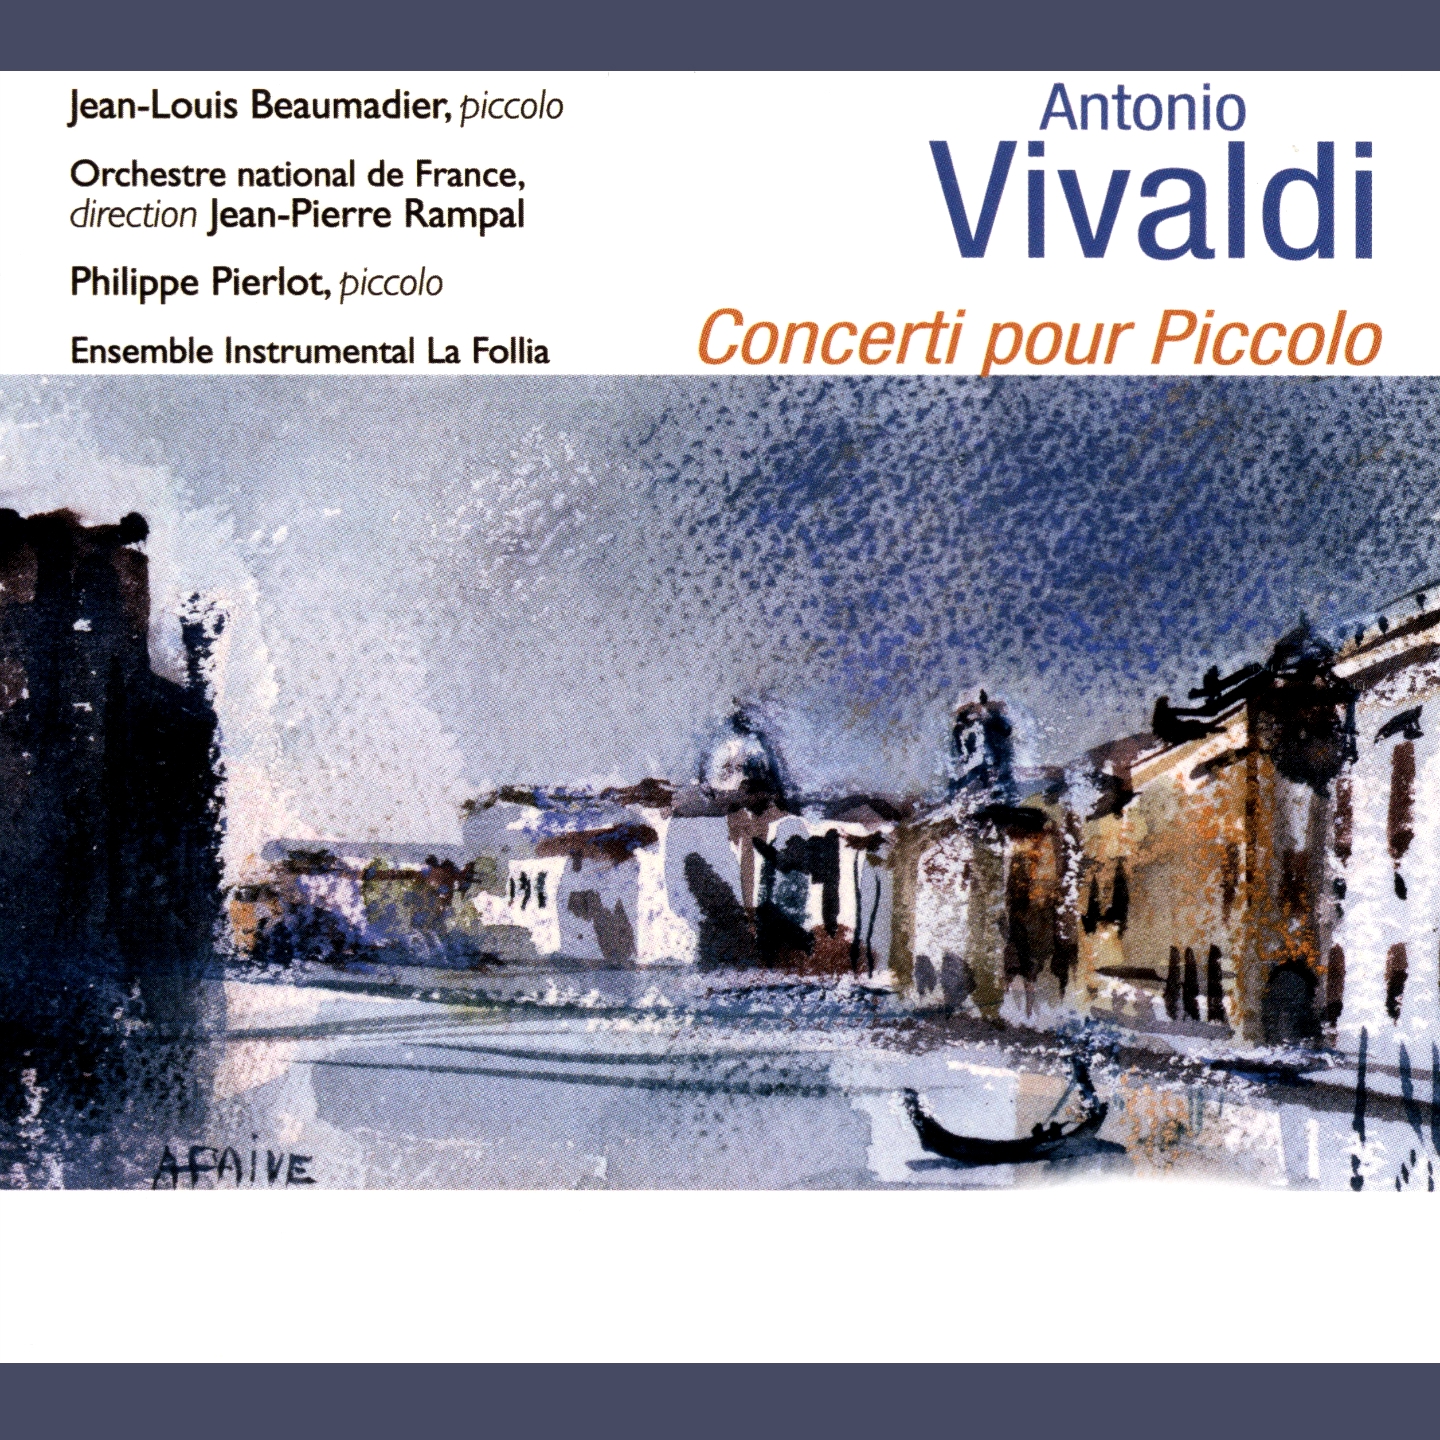 Vivaldi: Concerti pour piccolo